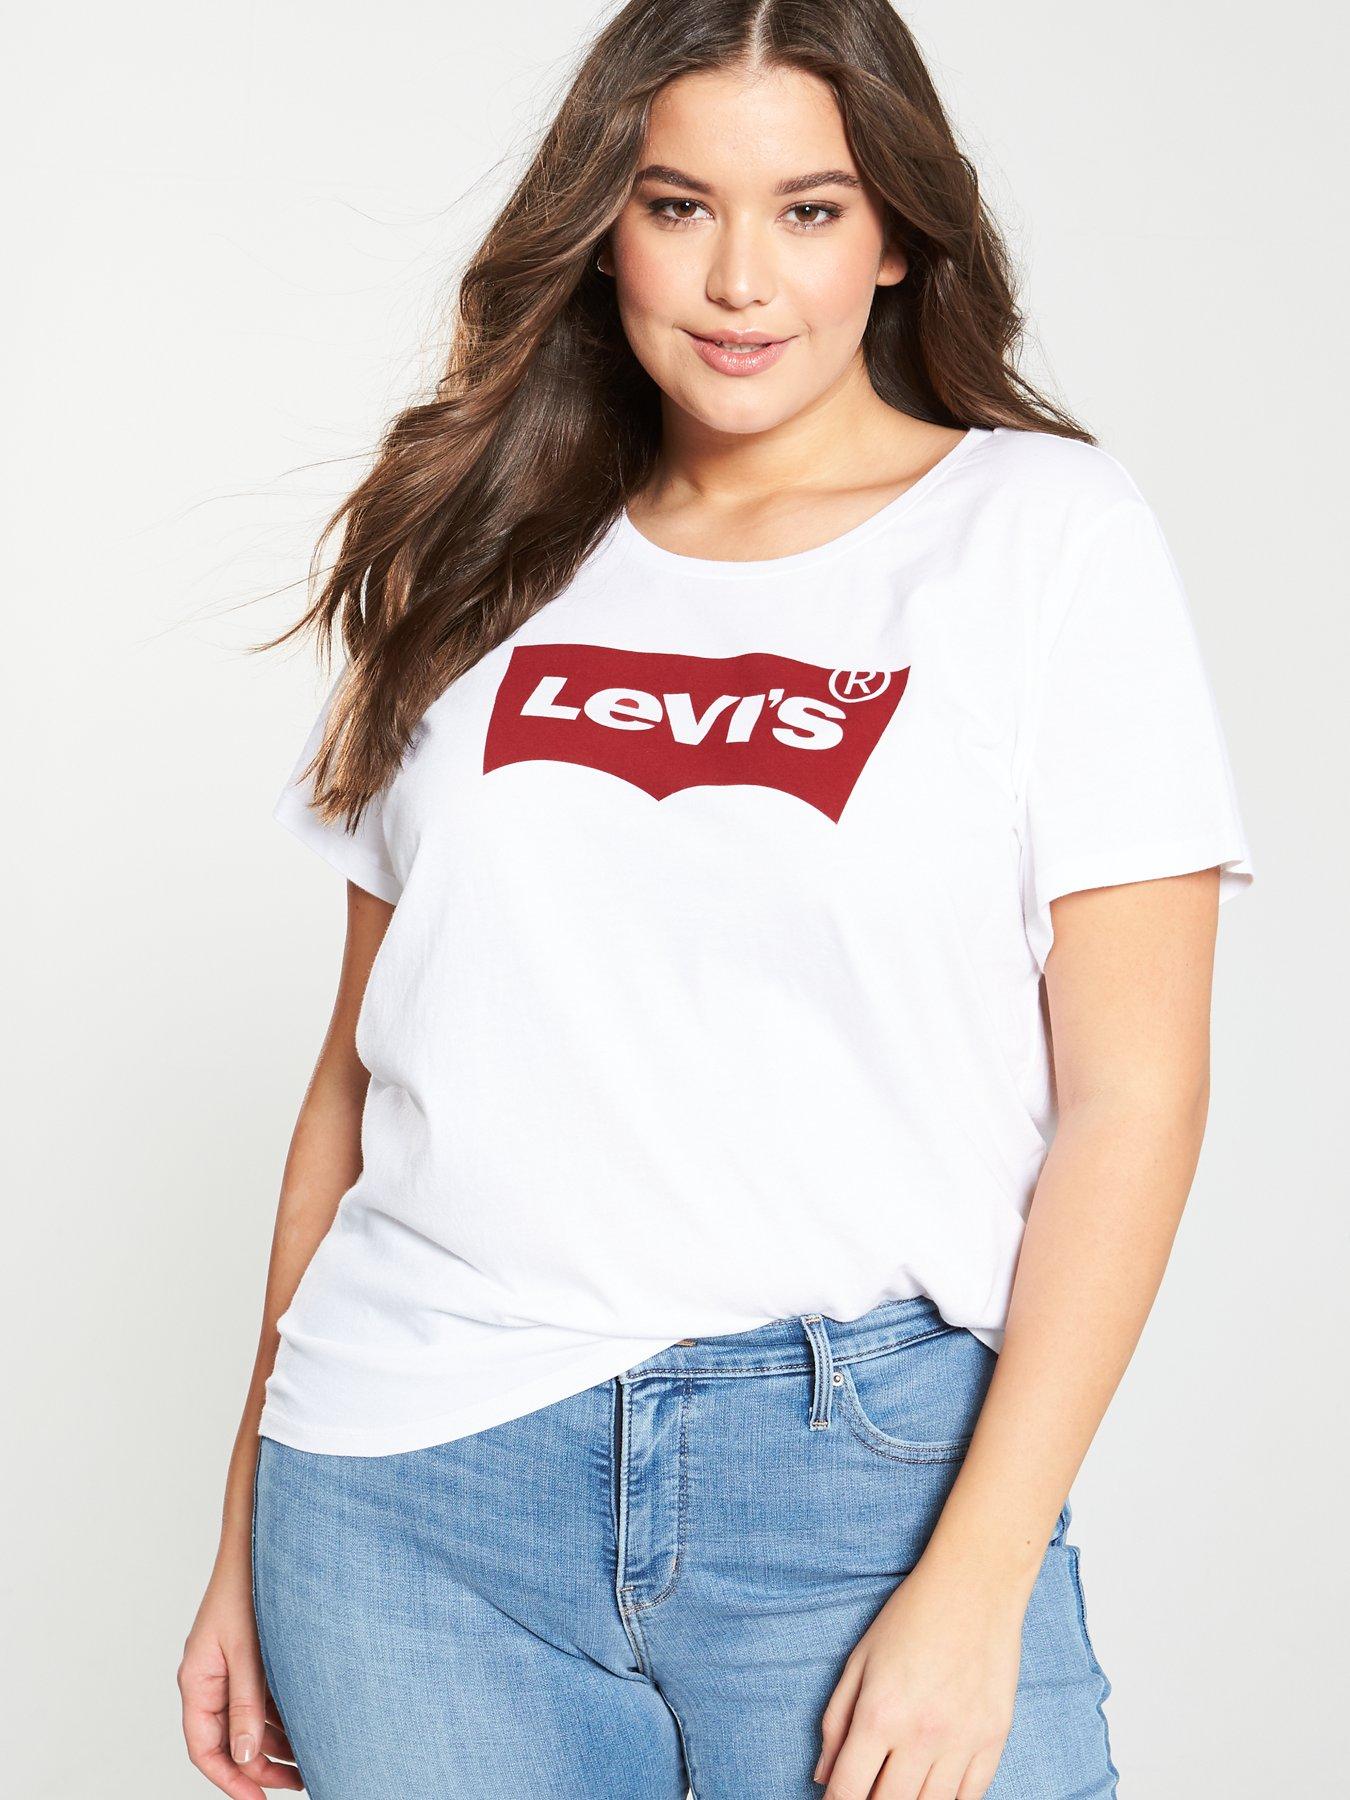 levis large sizes uk